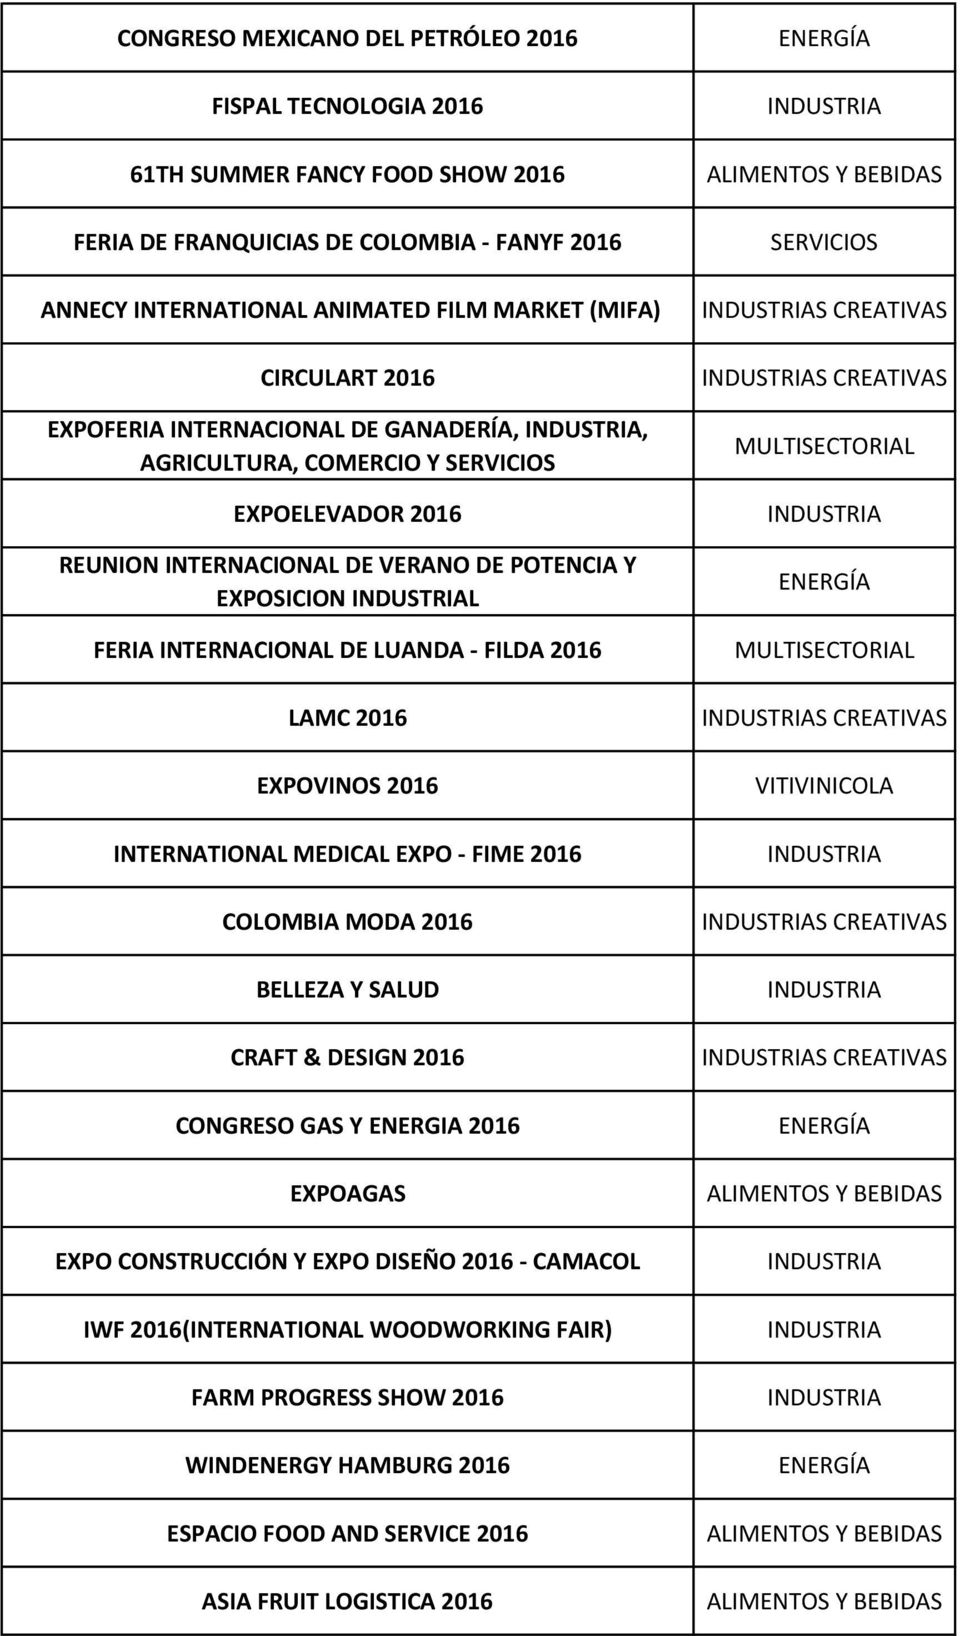 LAMC 2016 EXPOVINOS 2016 INTERNATIONAL MEDICAL EXPO - FIME 2016 COLOMBIA MODA 2016 BELLEZA Y SALUD CRAFT & DESIGN 2016 CONGRESO GAS Y ENERGIA 2016 EXPOAGAS EXPO CONSTRUCCIÓN Y EXPO DISEÑO 2016 -